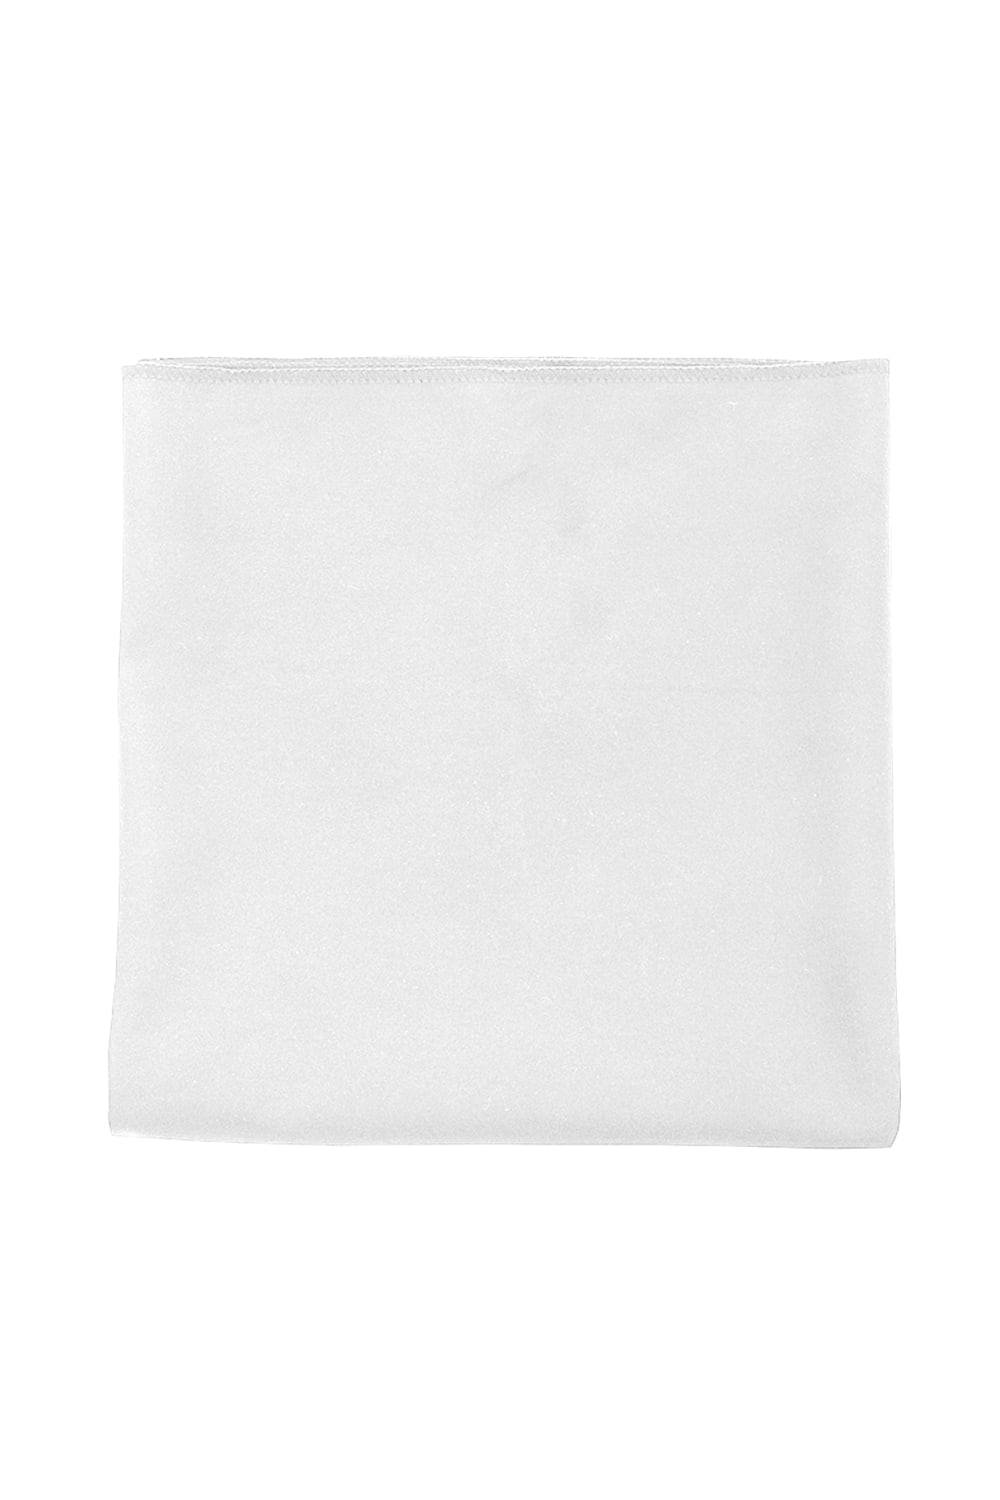 SOLS Atoll 70 Microfiber Bath Towel (White) (27.5 x 48 in)